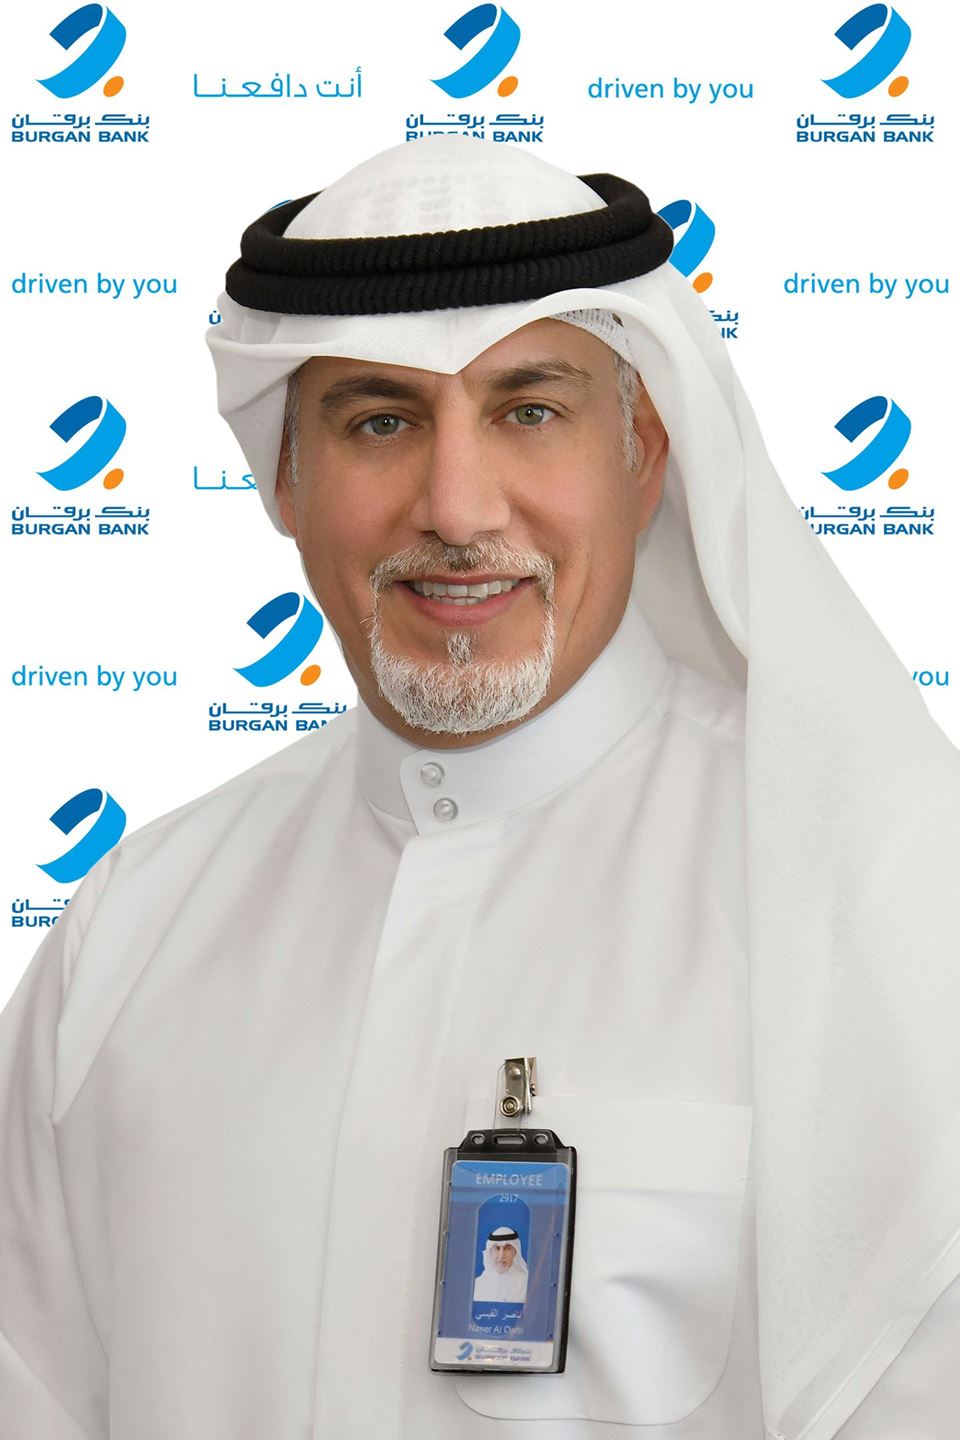 Mr. Naser Mohammad Al Qaisi, Chief Retail Banking Officer at Burgan Bank